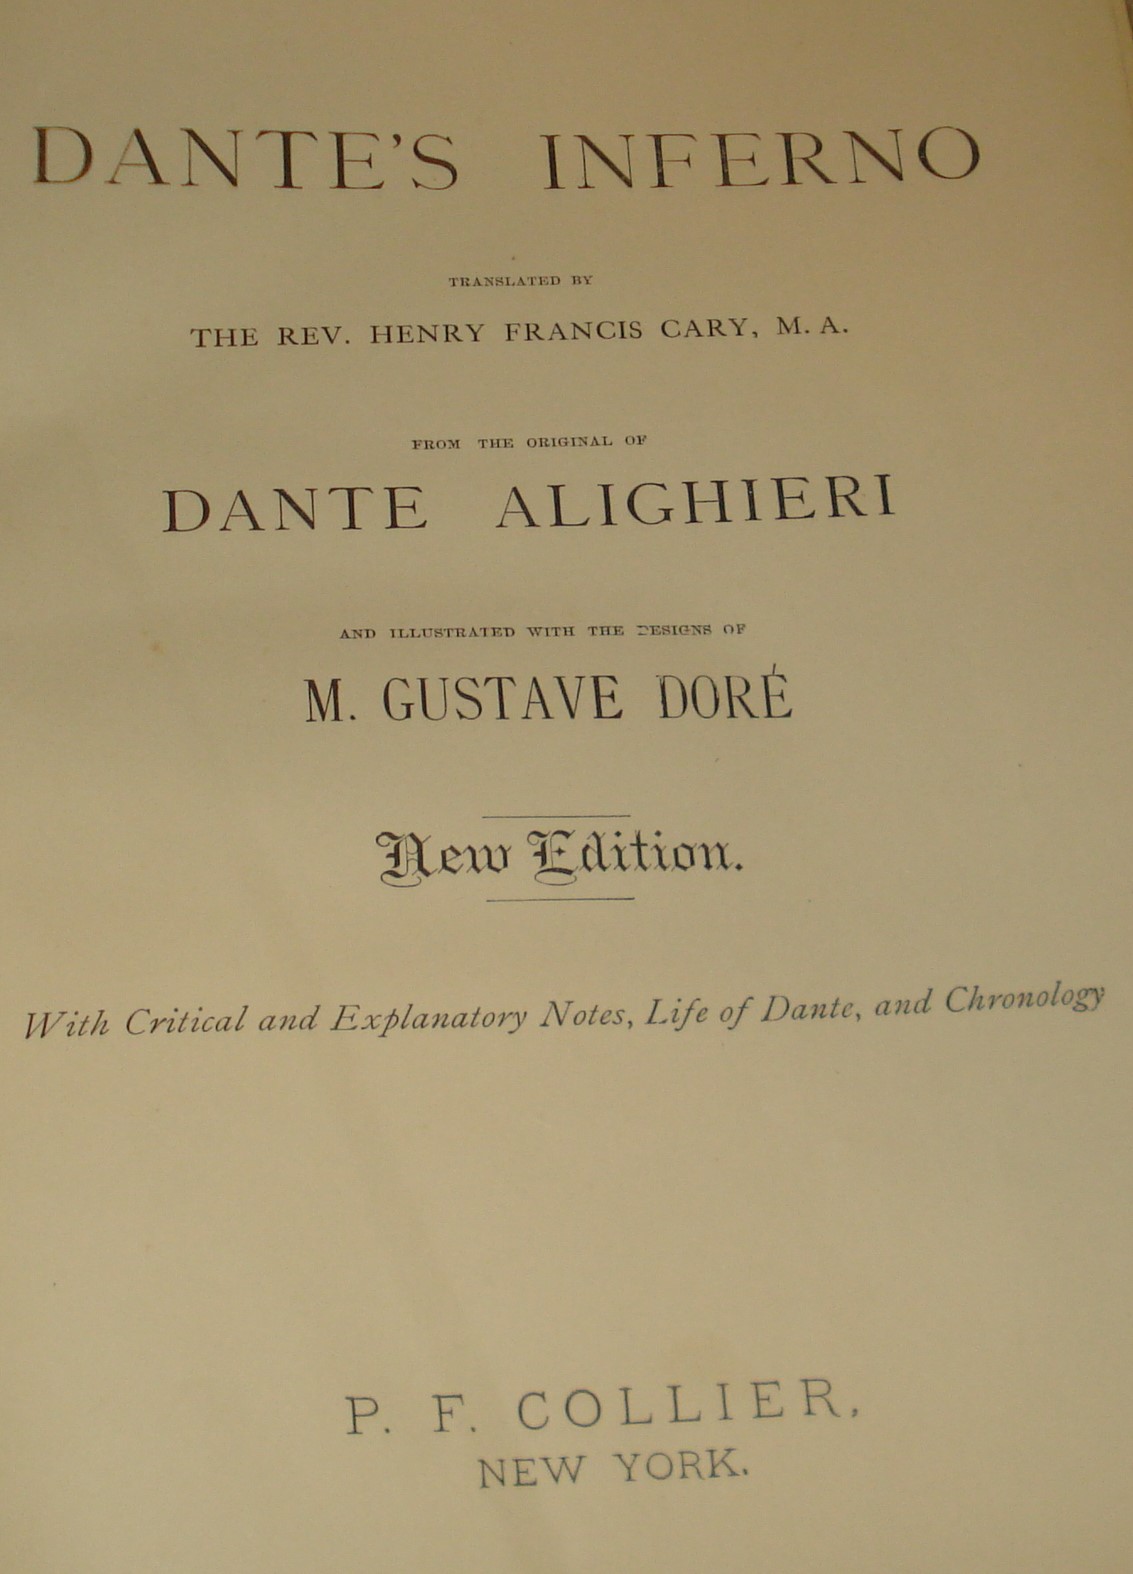 BOOK - Dante's Inferno Gustave Dore pic3.jpg